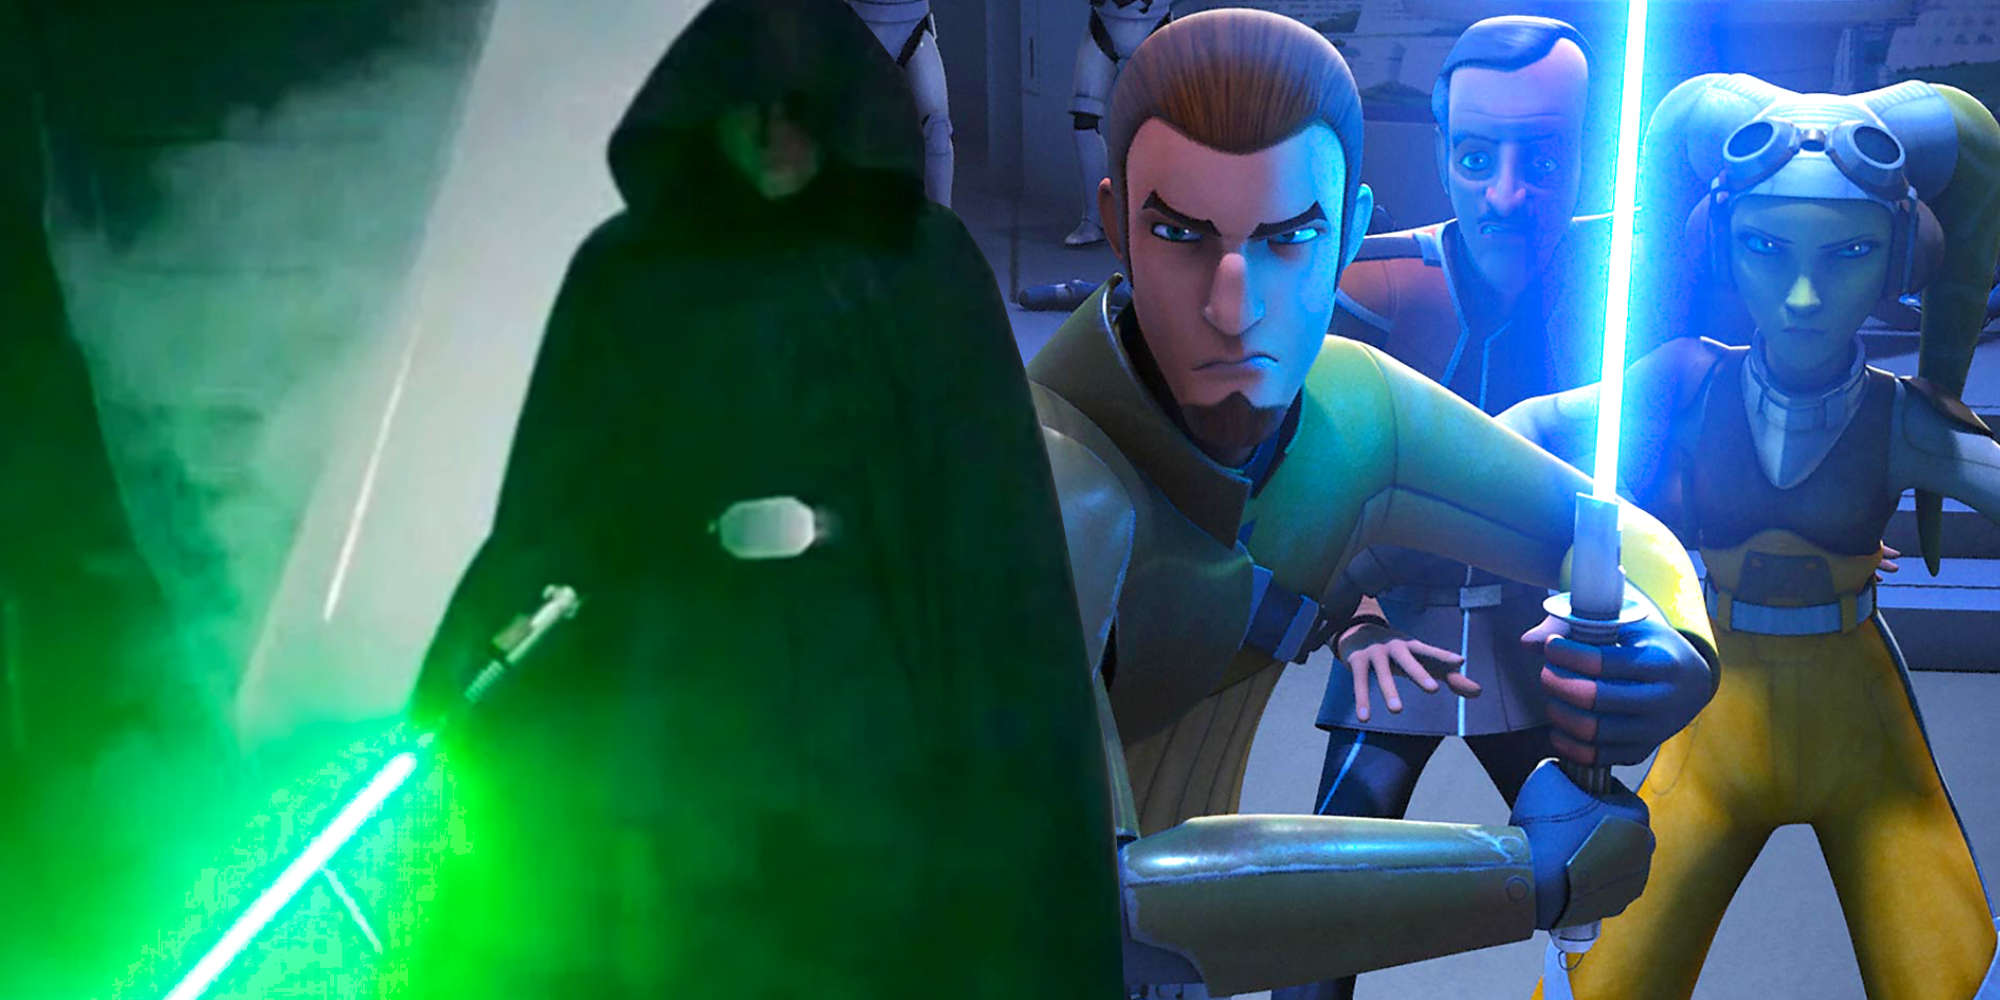 Luke Skywalker and Star Wars Rebels' Kanan Jarrus